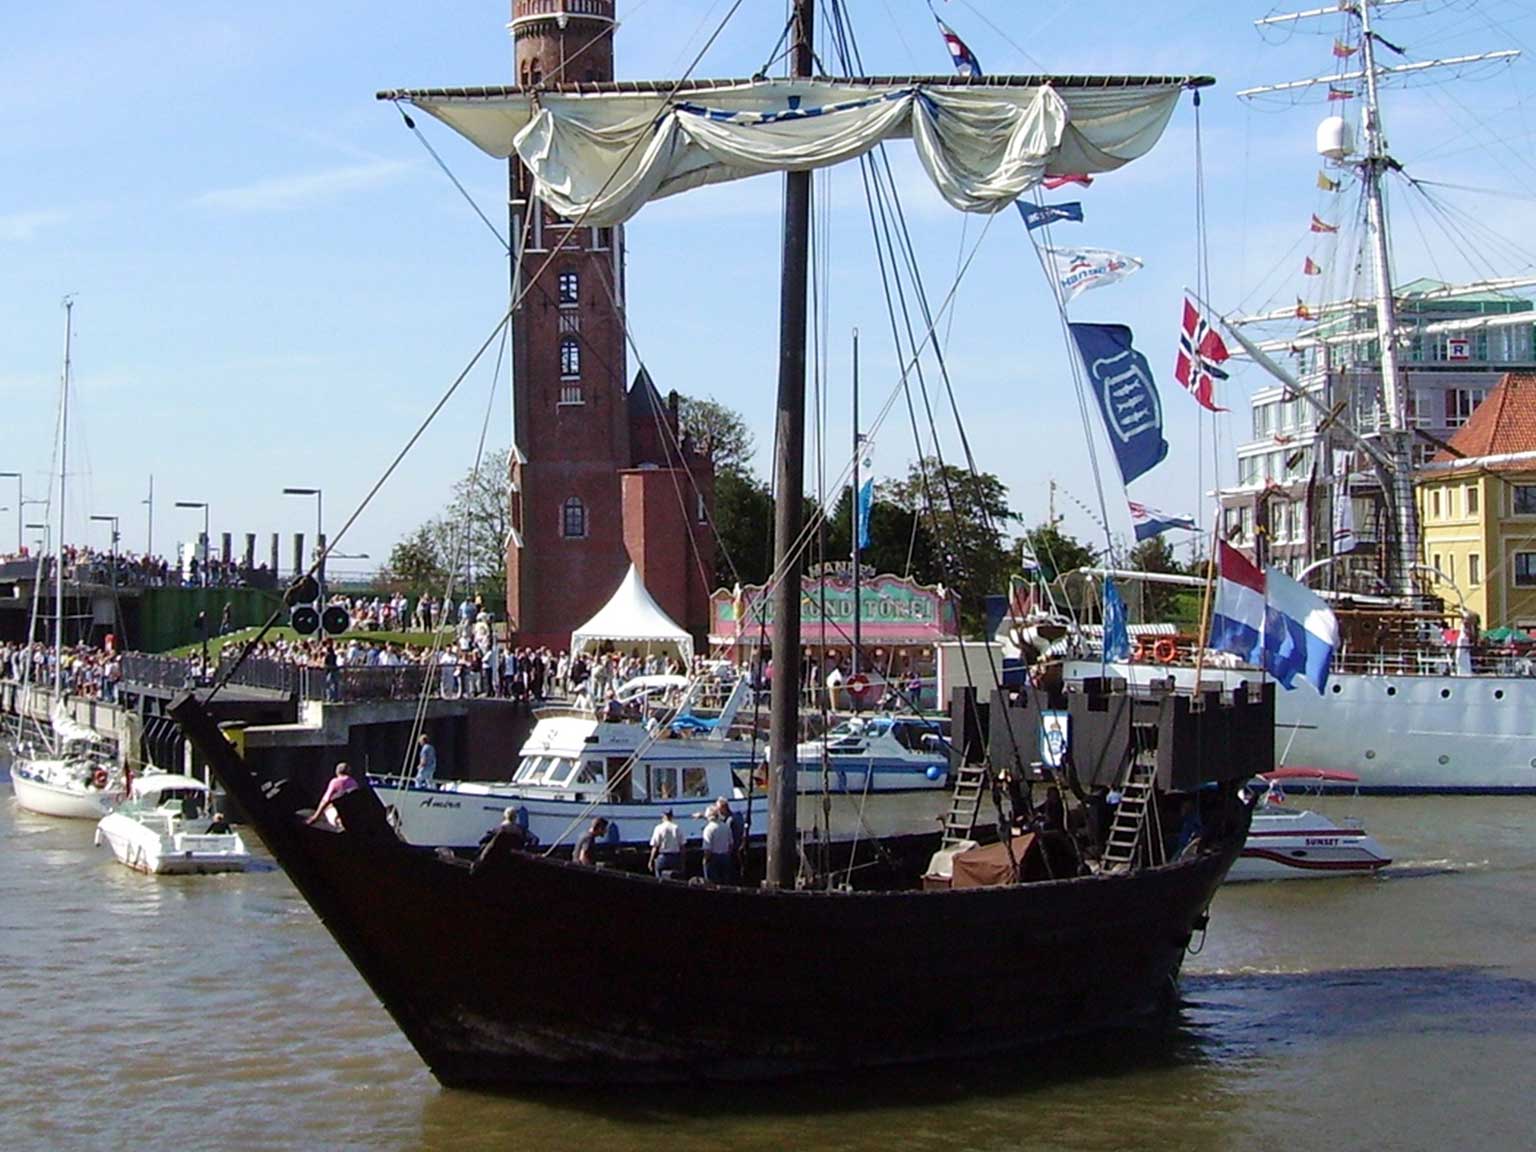 Nederlandse kogge uit Kampen in de haven van Bremerhaven, Duitsland, 2008